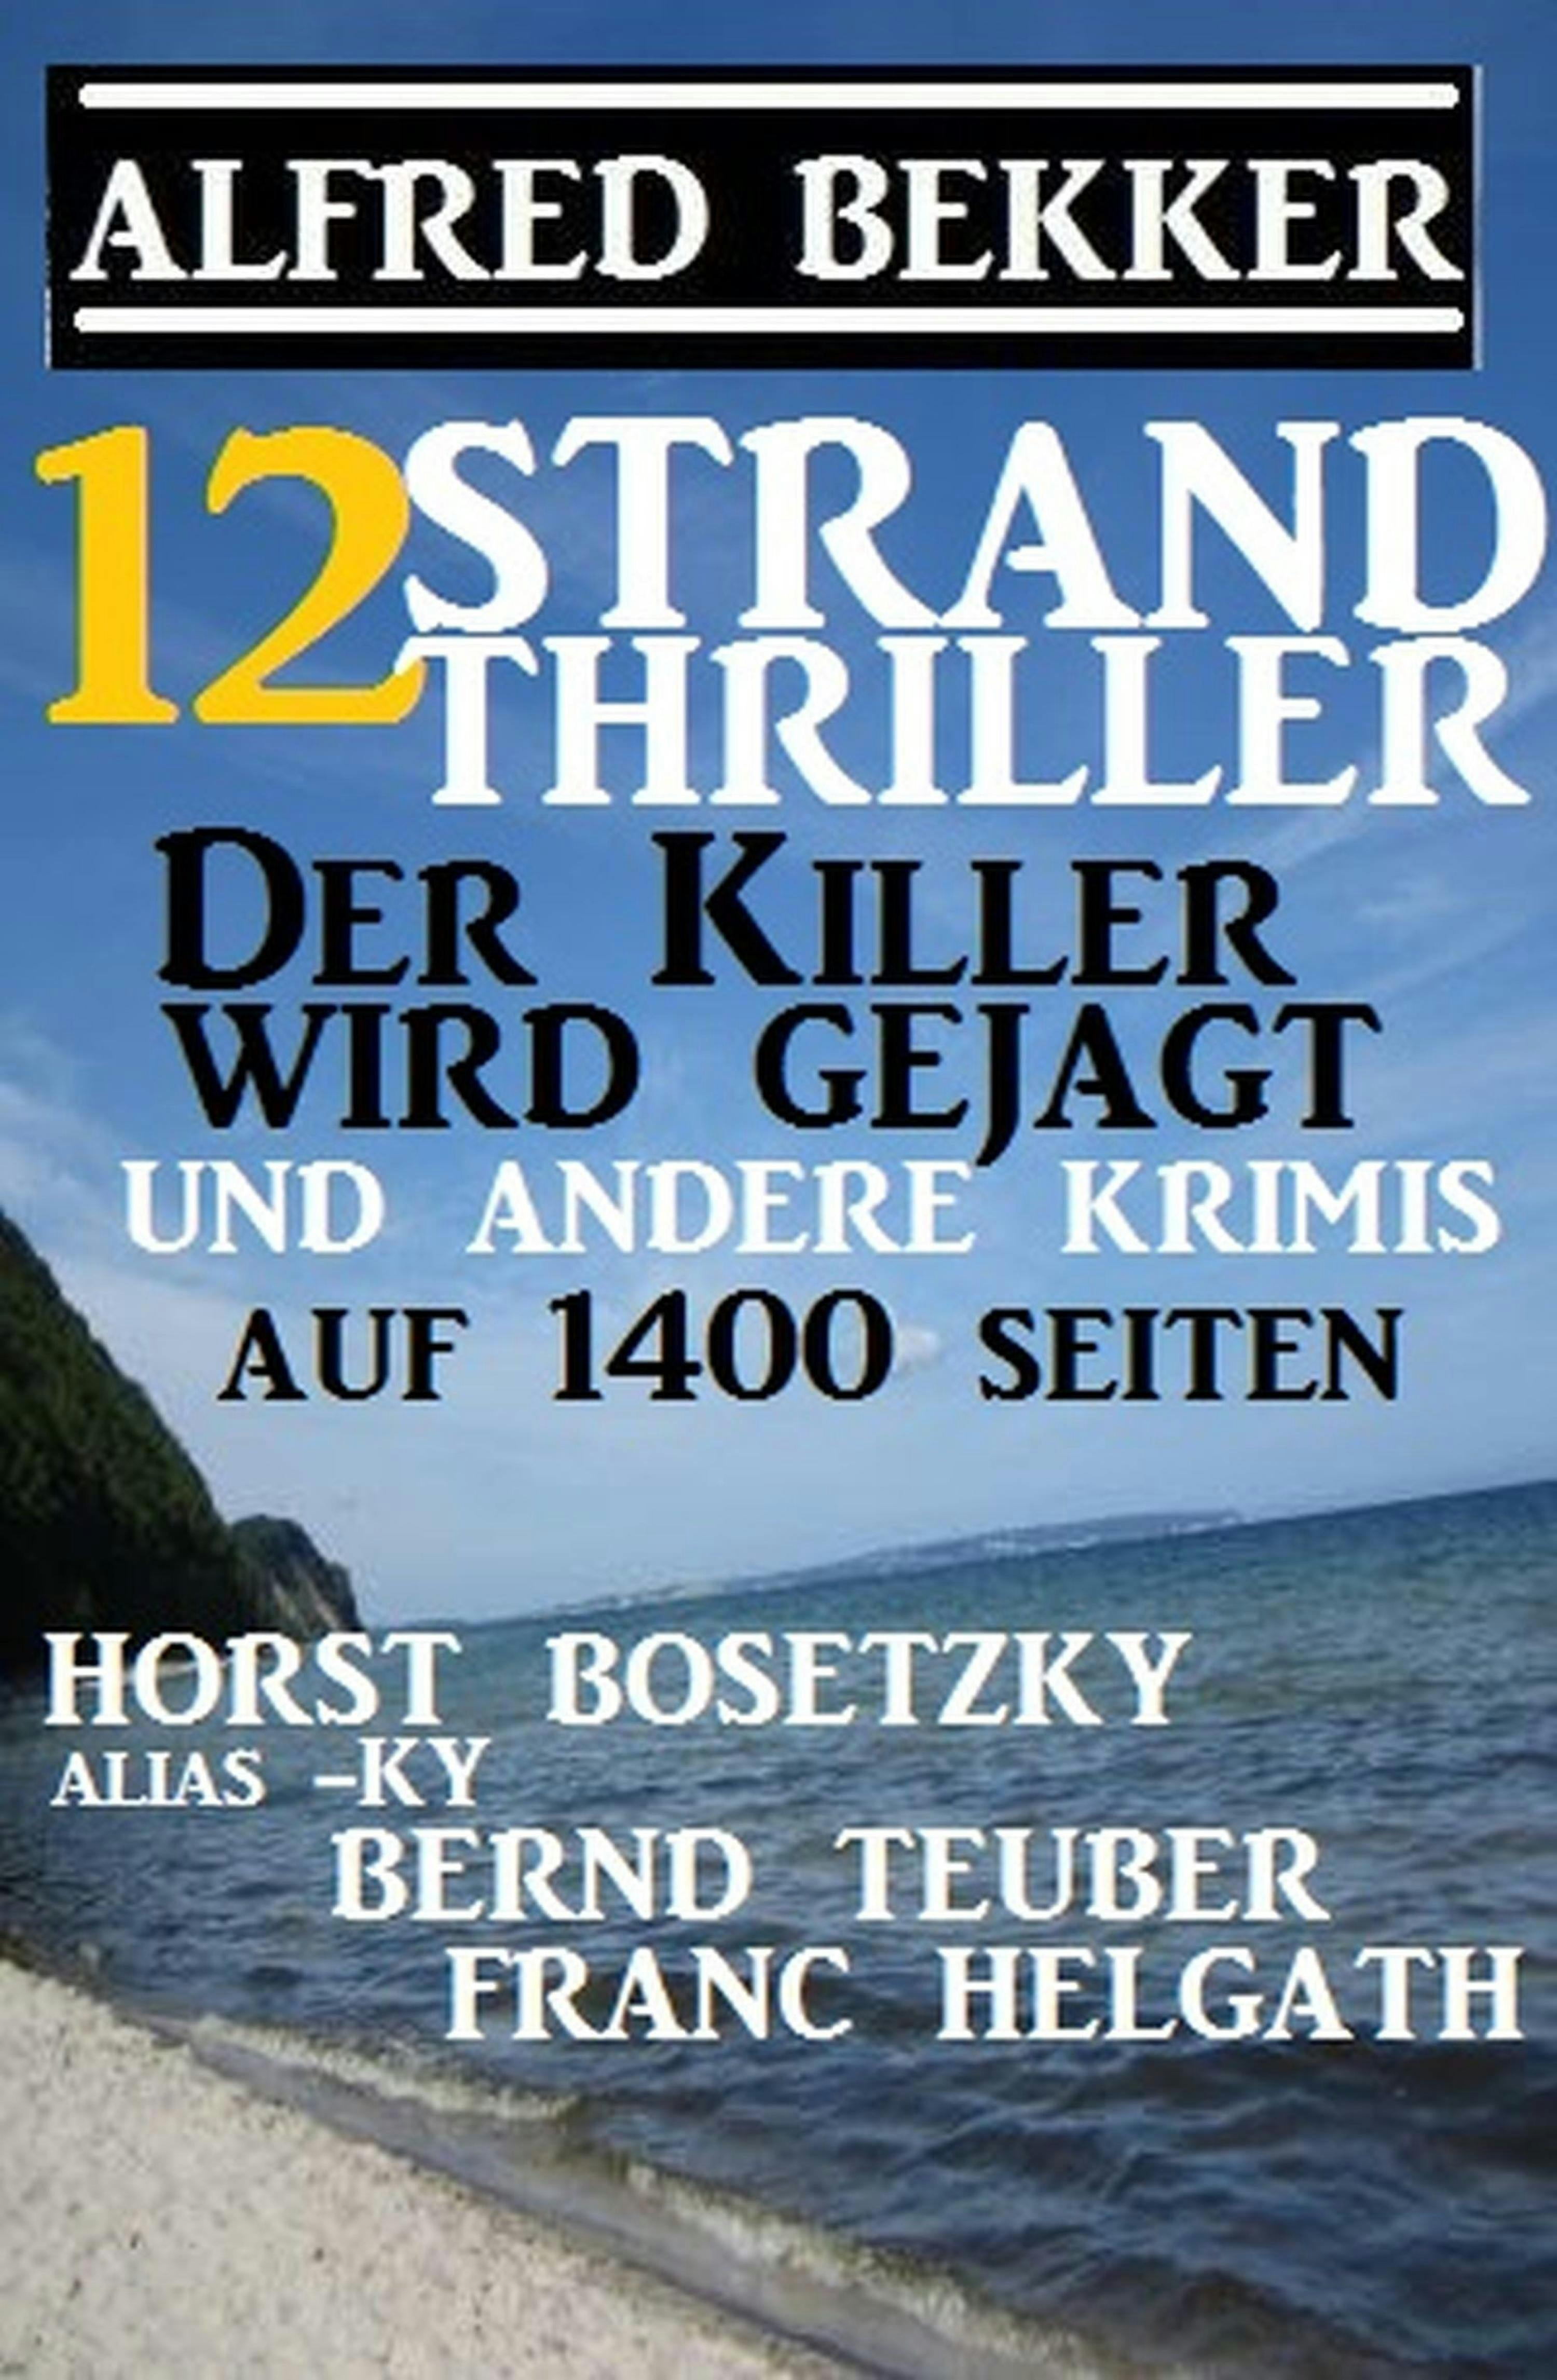 12 Strand Thriller: Der Killer wird gejagt und andere Krimis auf 1400 Seiten - Alfred Bekker, Horst Bosetzky, Franc Helgath, Bernd Teuber